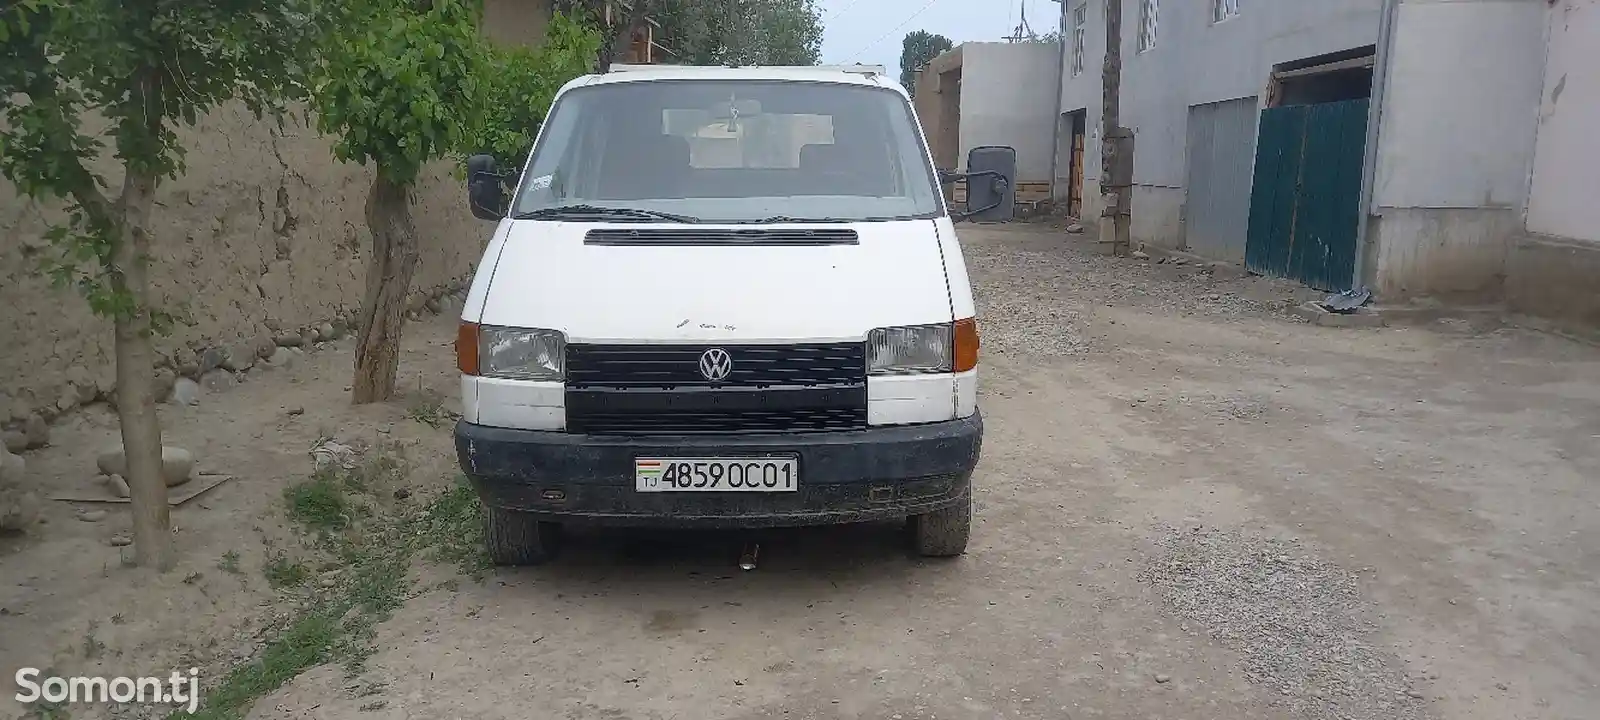 Бортовой автомобиль Volkswagen Transporter, 2001-6